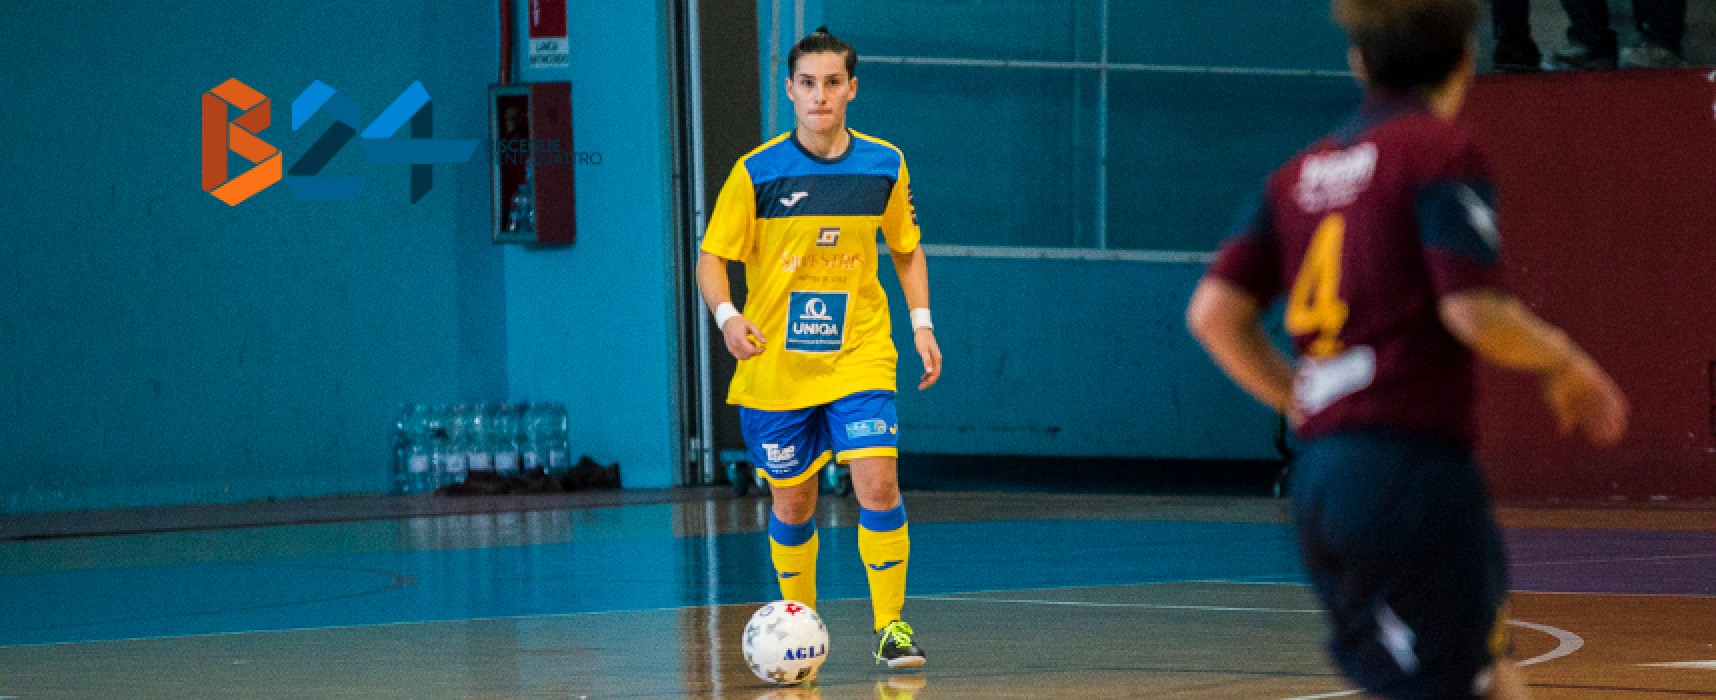 Calcio a 5 femminile: Arcadia cade a Locri, Futsal Bisceglie corsara a Cosenza / CLASSIFICHE